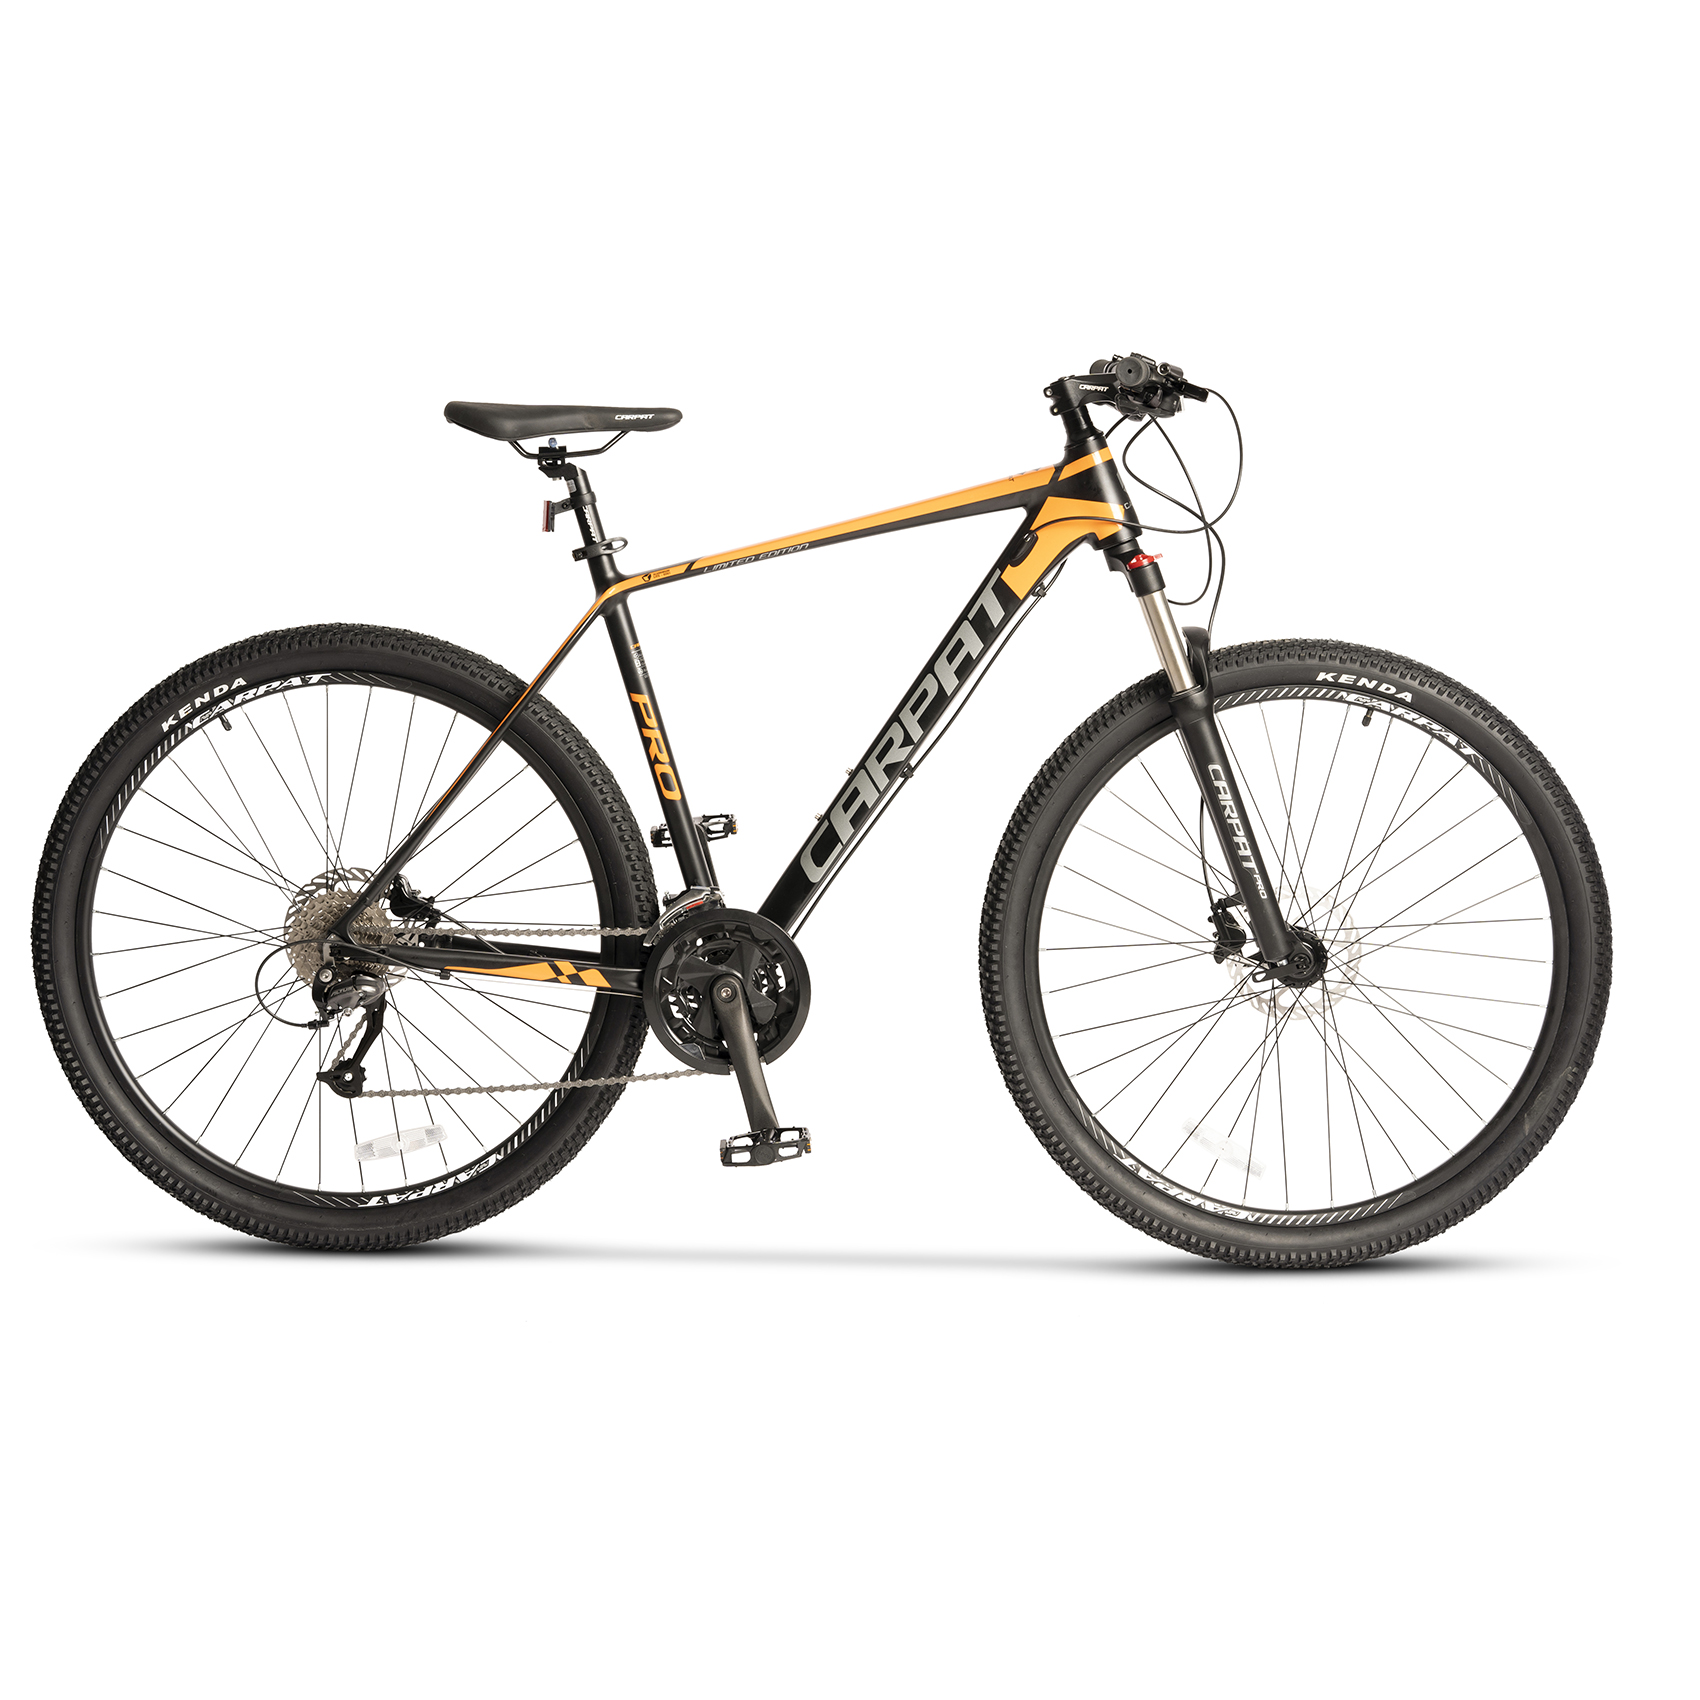 BICICLETE HIDRAULICE - Bicicleta MTB-HT Carpat PRO C26227H LIMITED EDITION 26", Negru/Portocaliu, carpatsport.ro